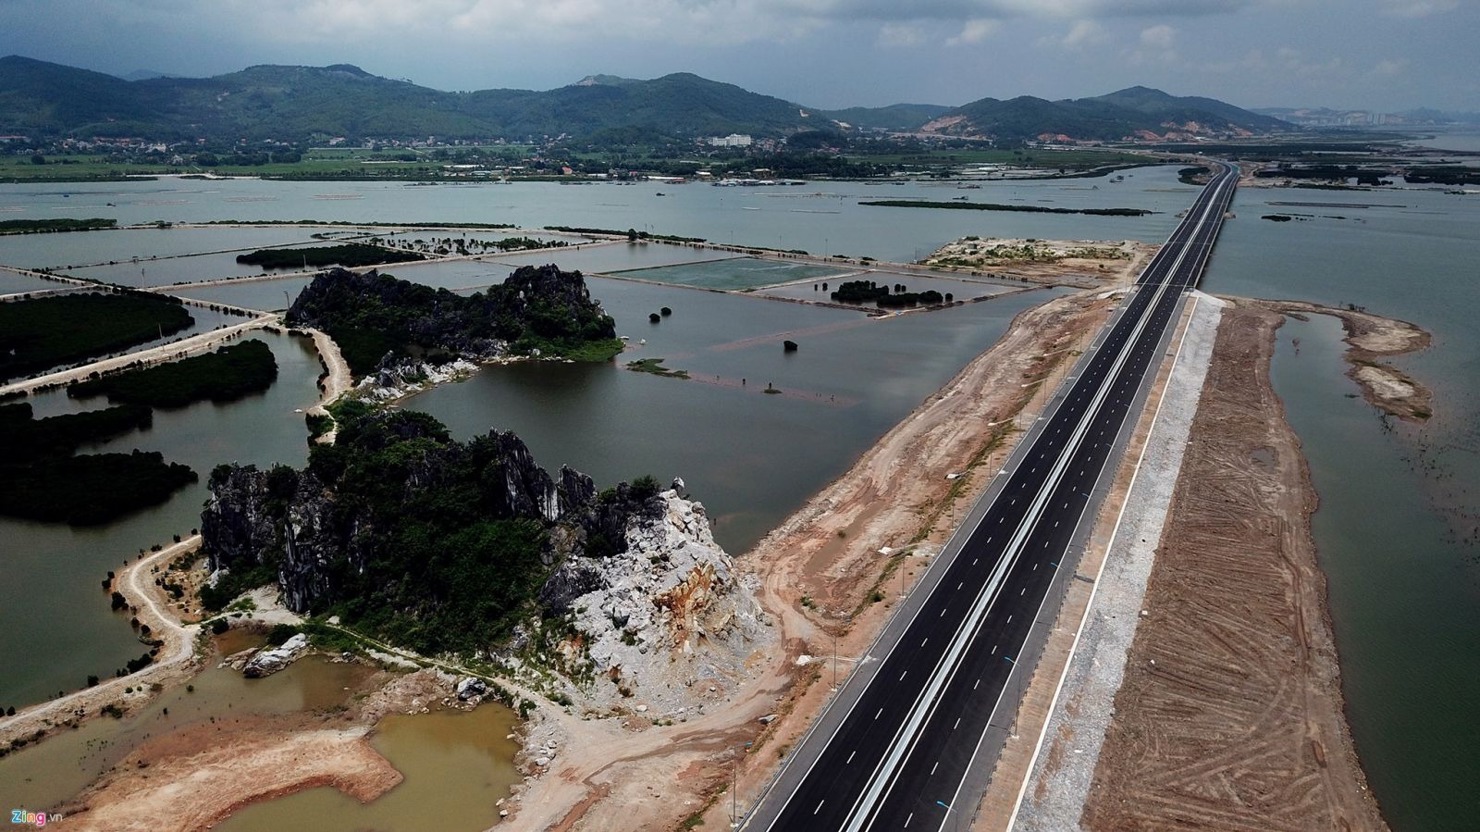 Cao tốc Hạ Long - Hải Phòng sẽ là một cú hích mạnh mẽ để Quảng Ninh sớm trở thành “thiên đường” bất động sản nghỉ dưỡng miền Bắc. Ảnh: Zing.vn